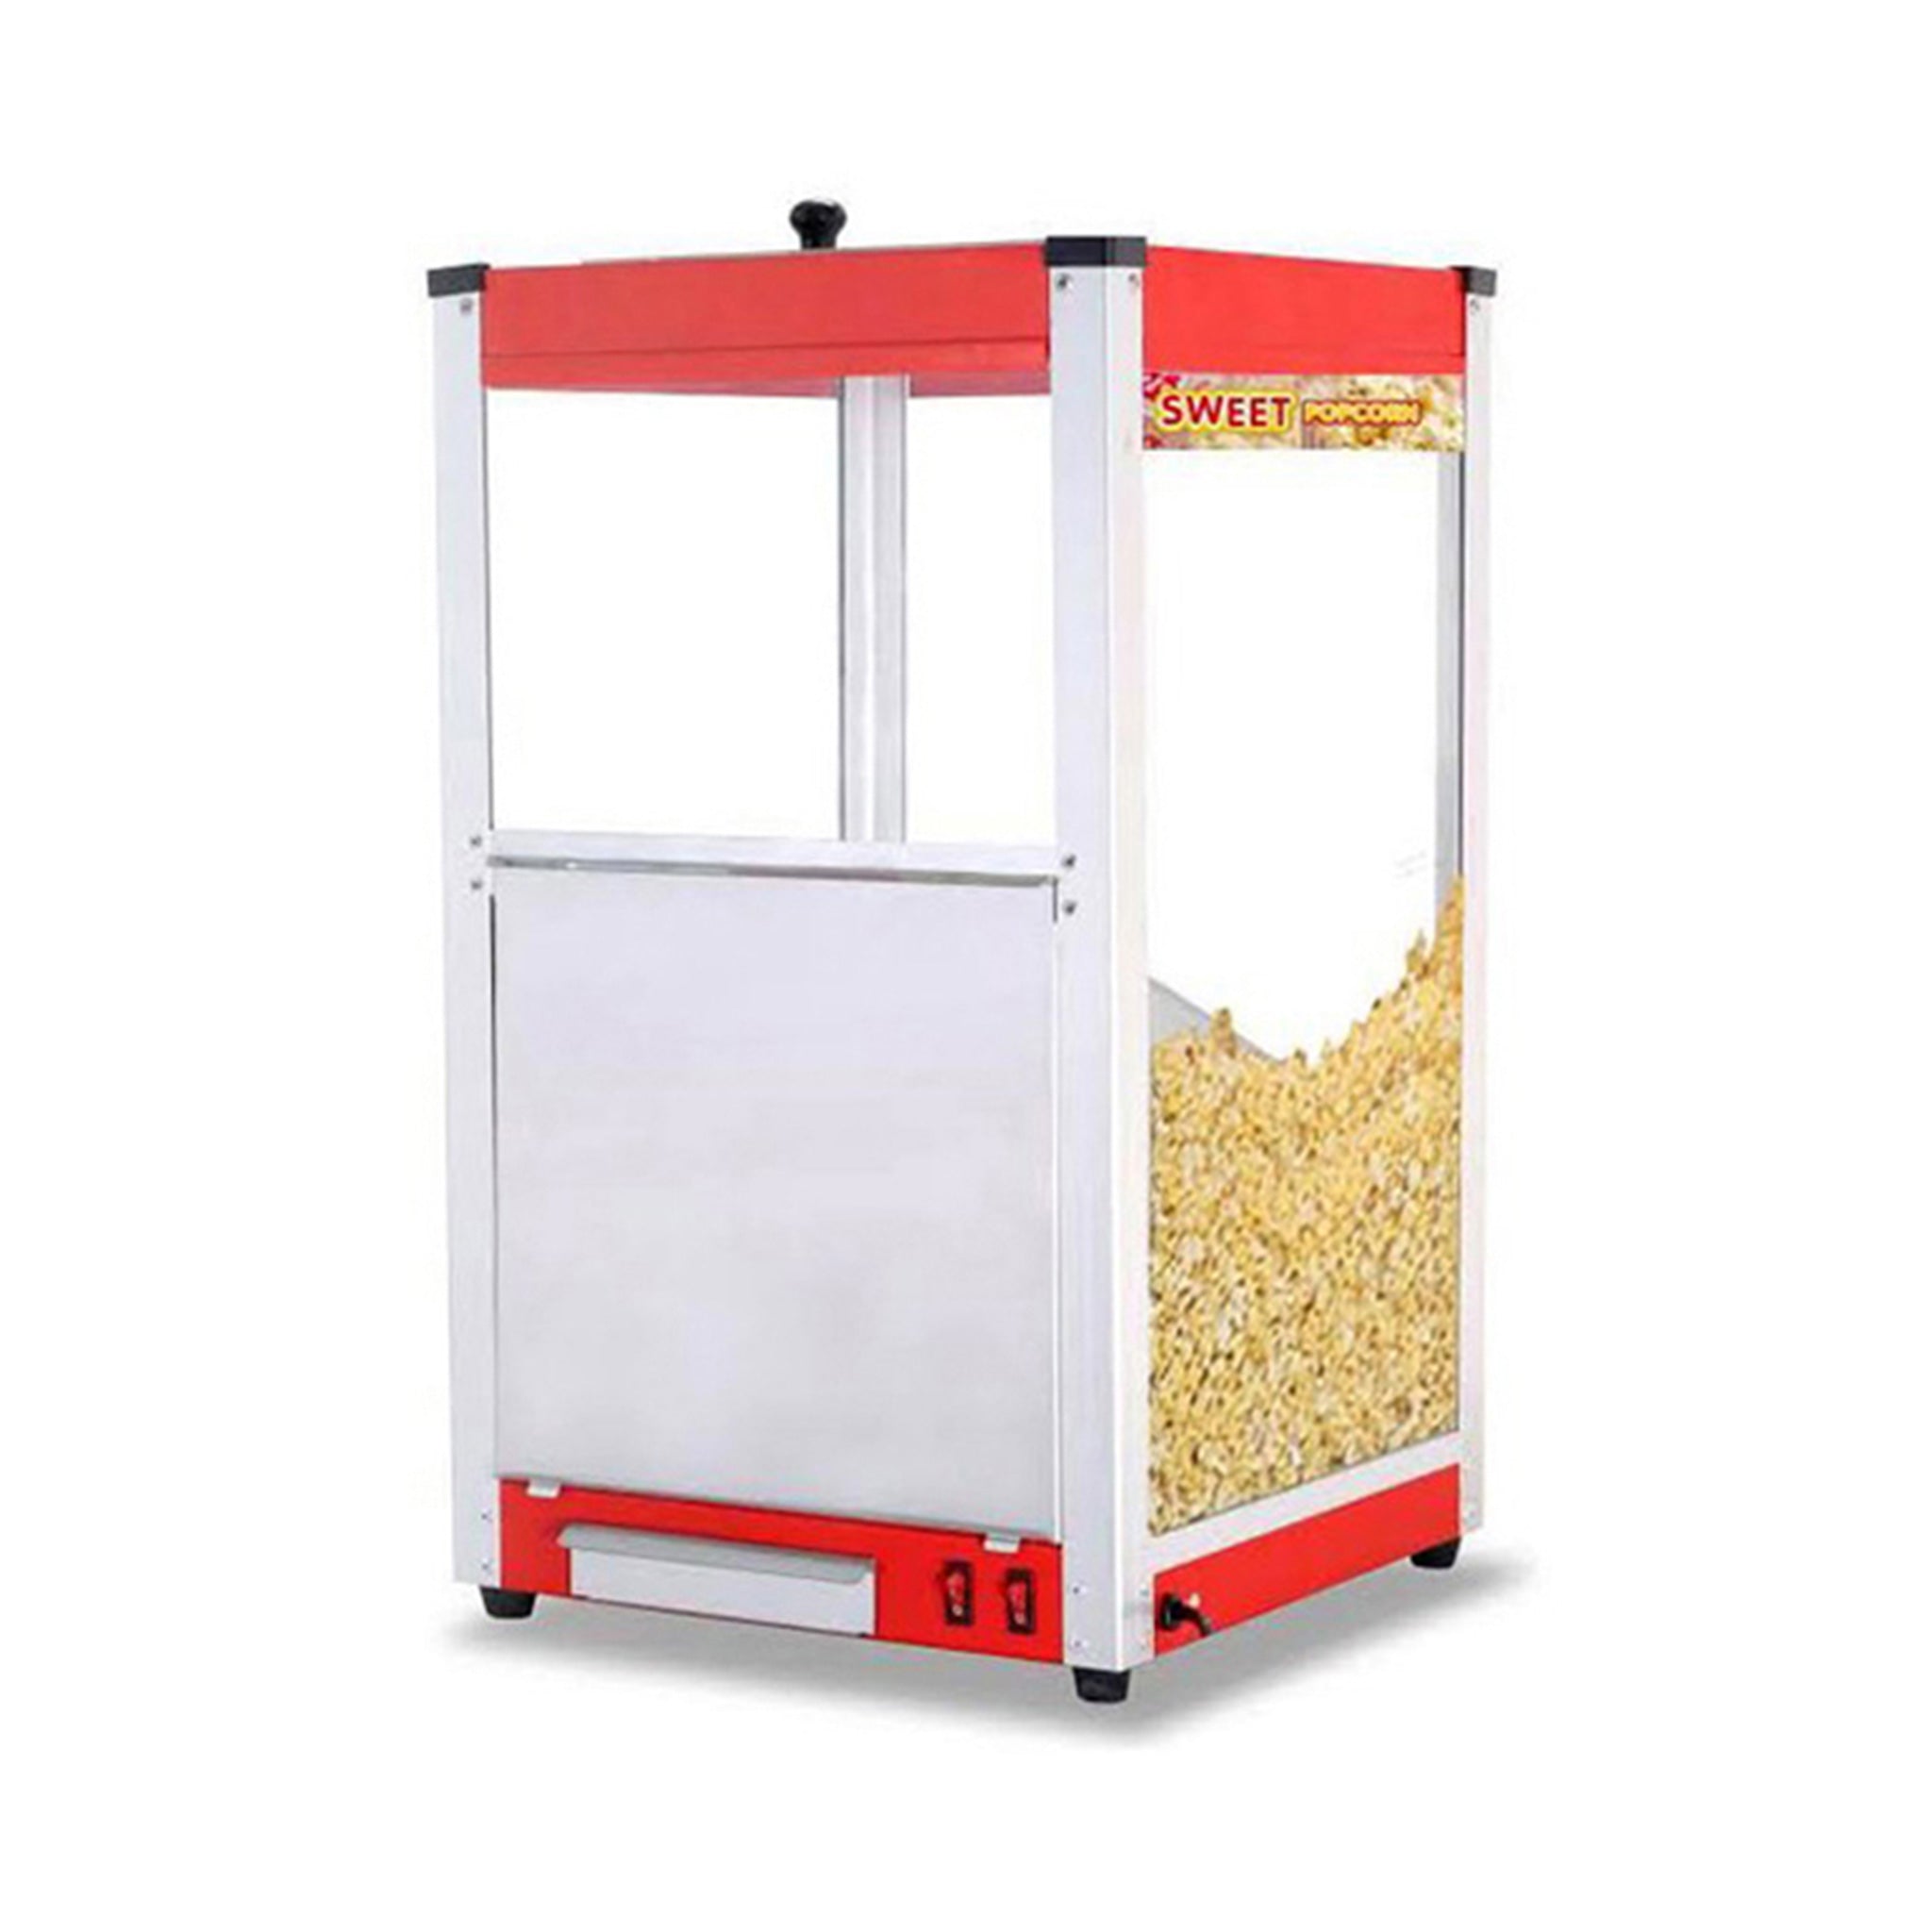 Double Popcorn Warmer Package Deal